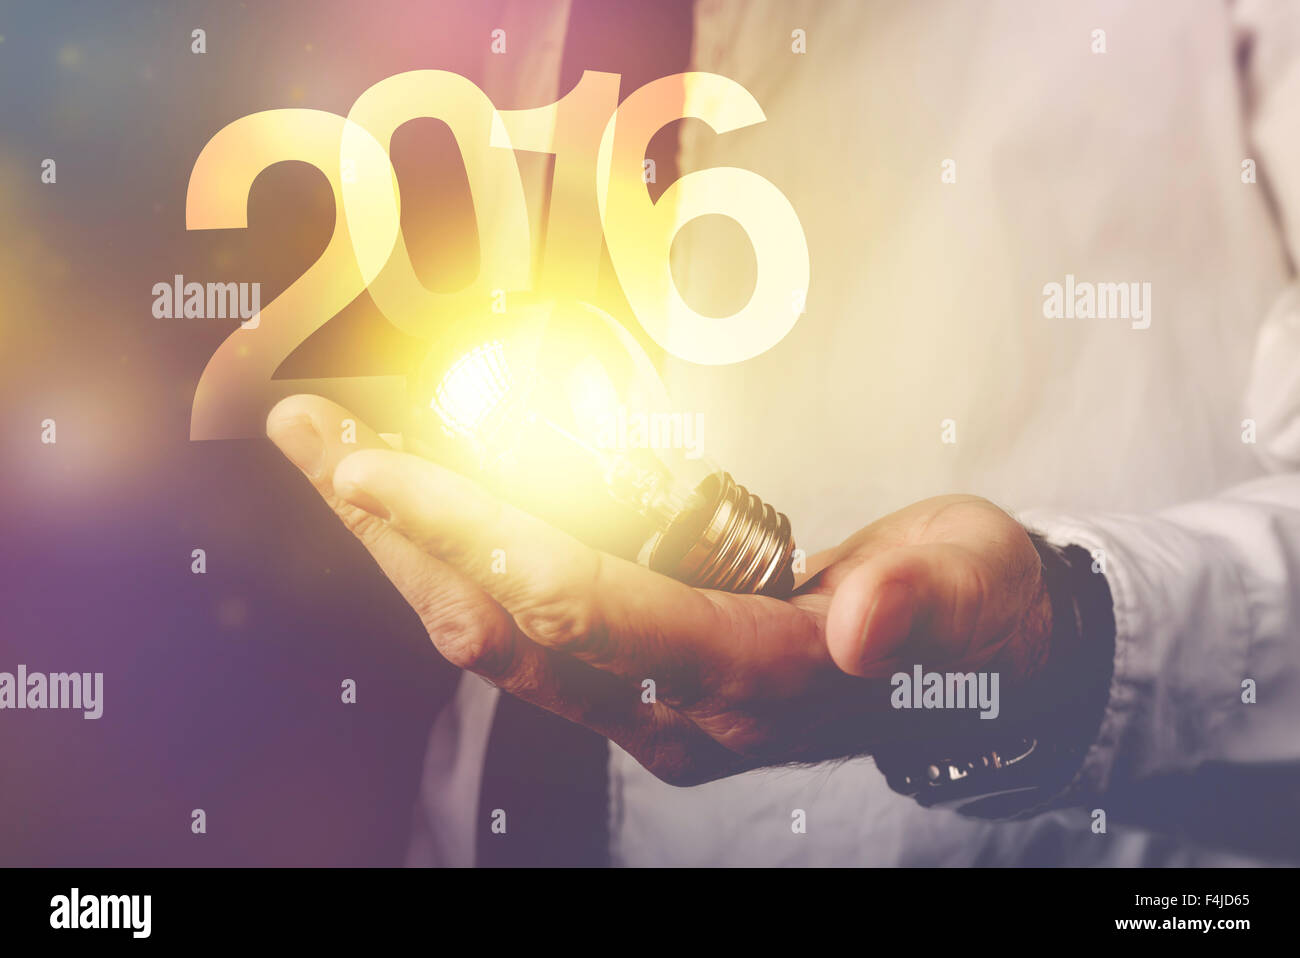 Glückliche neue 2016 Geschäftsjahr, Geschäftsmann mit Glühbirne und Reihe 2016, Retro-getönten Bild, selektiven Fokus. Stockfoto